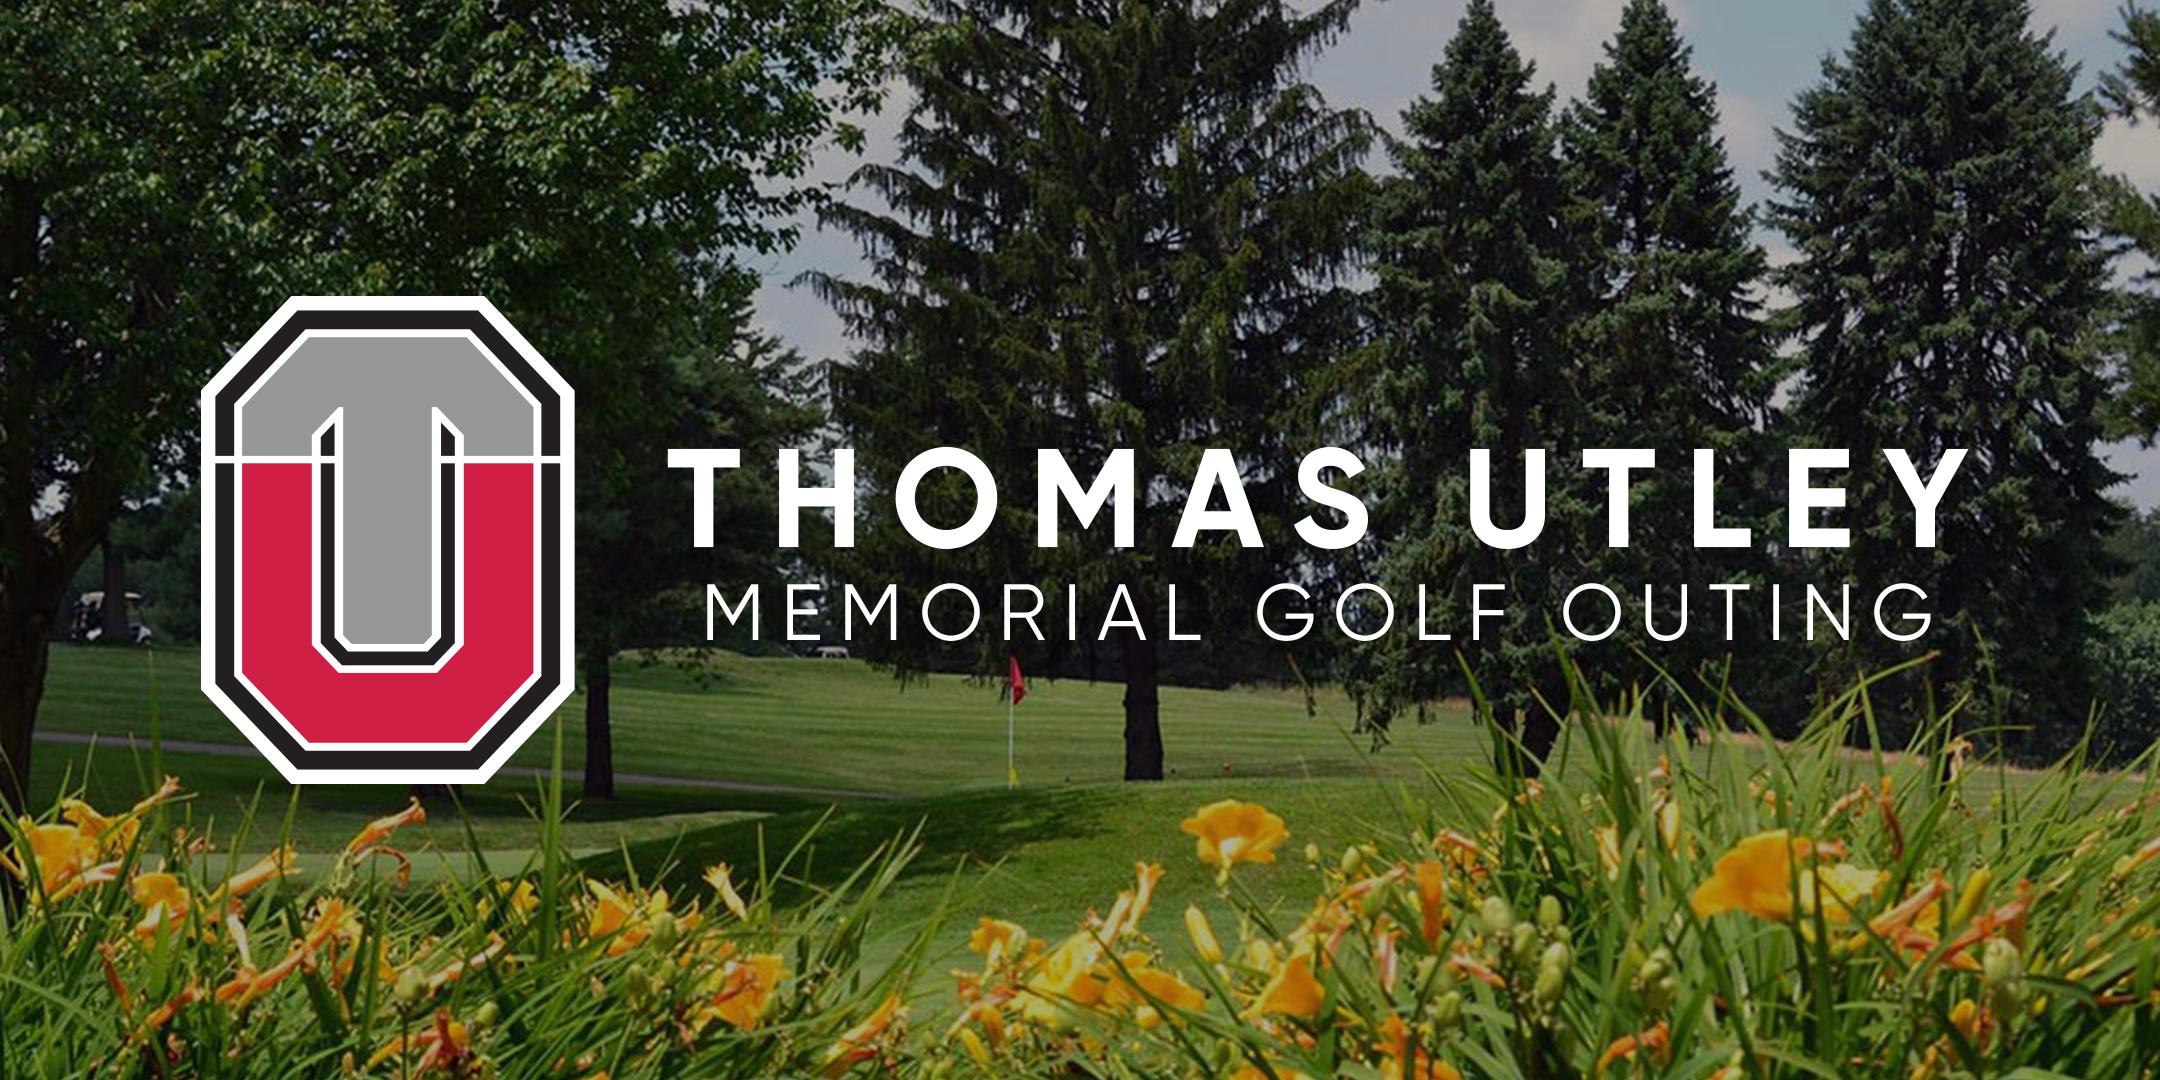 Thomas Utley Memorial Golf Outing